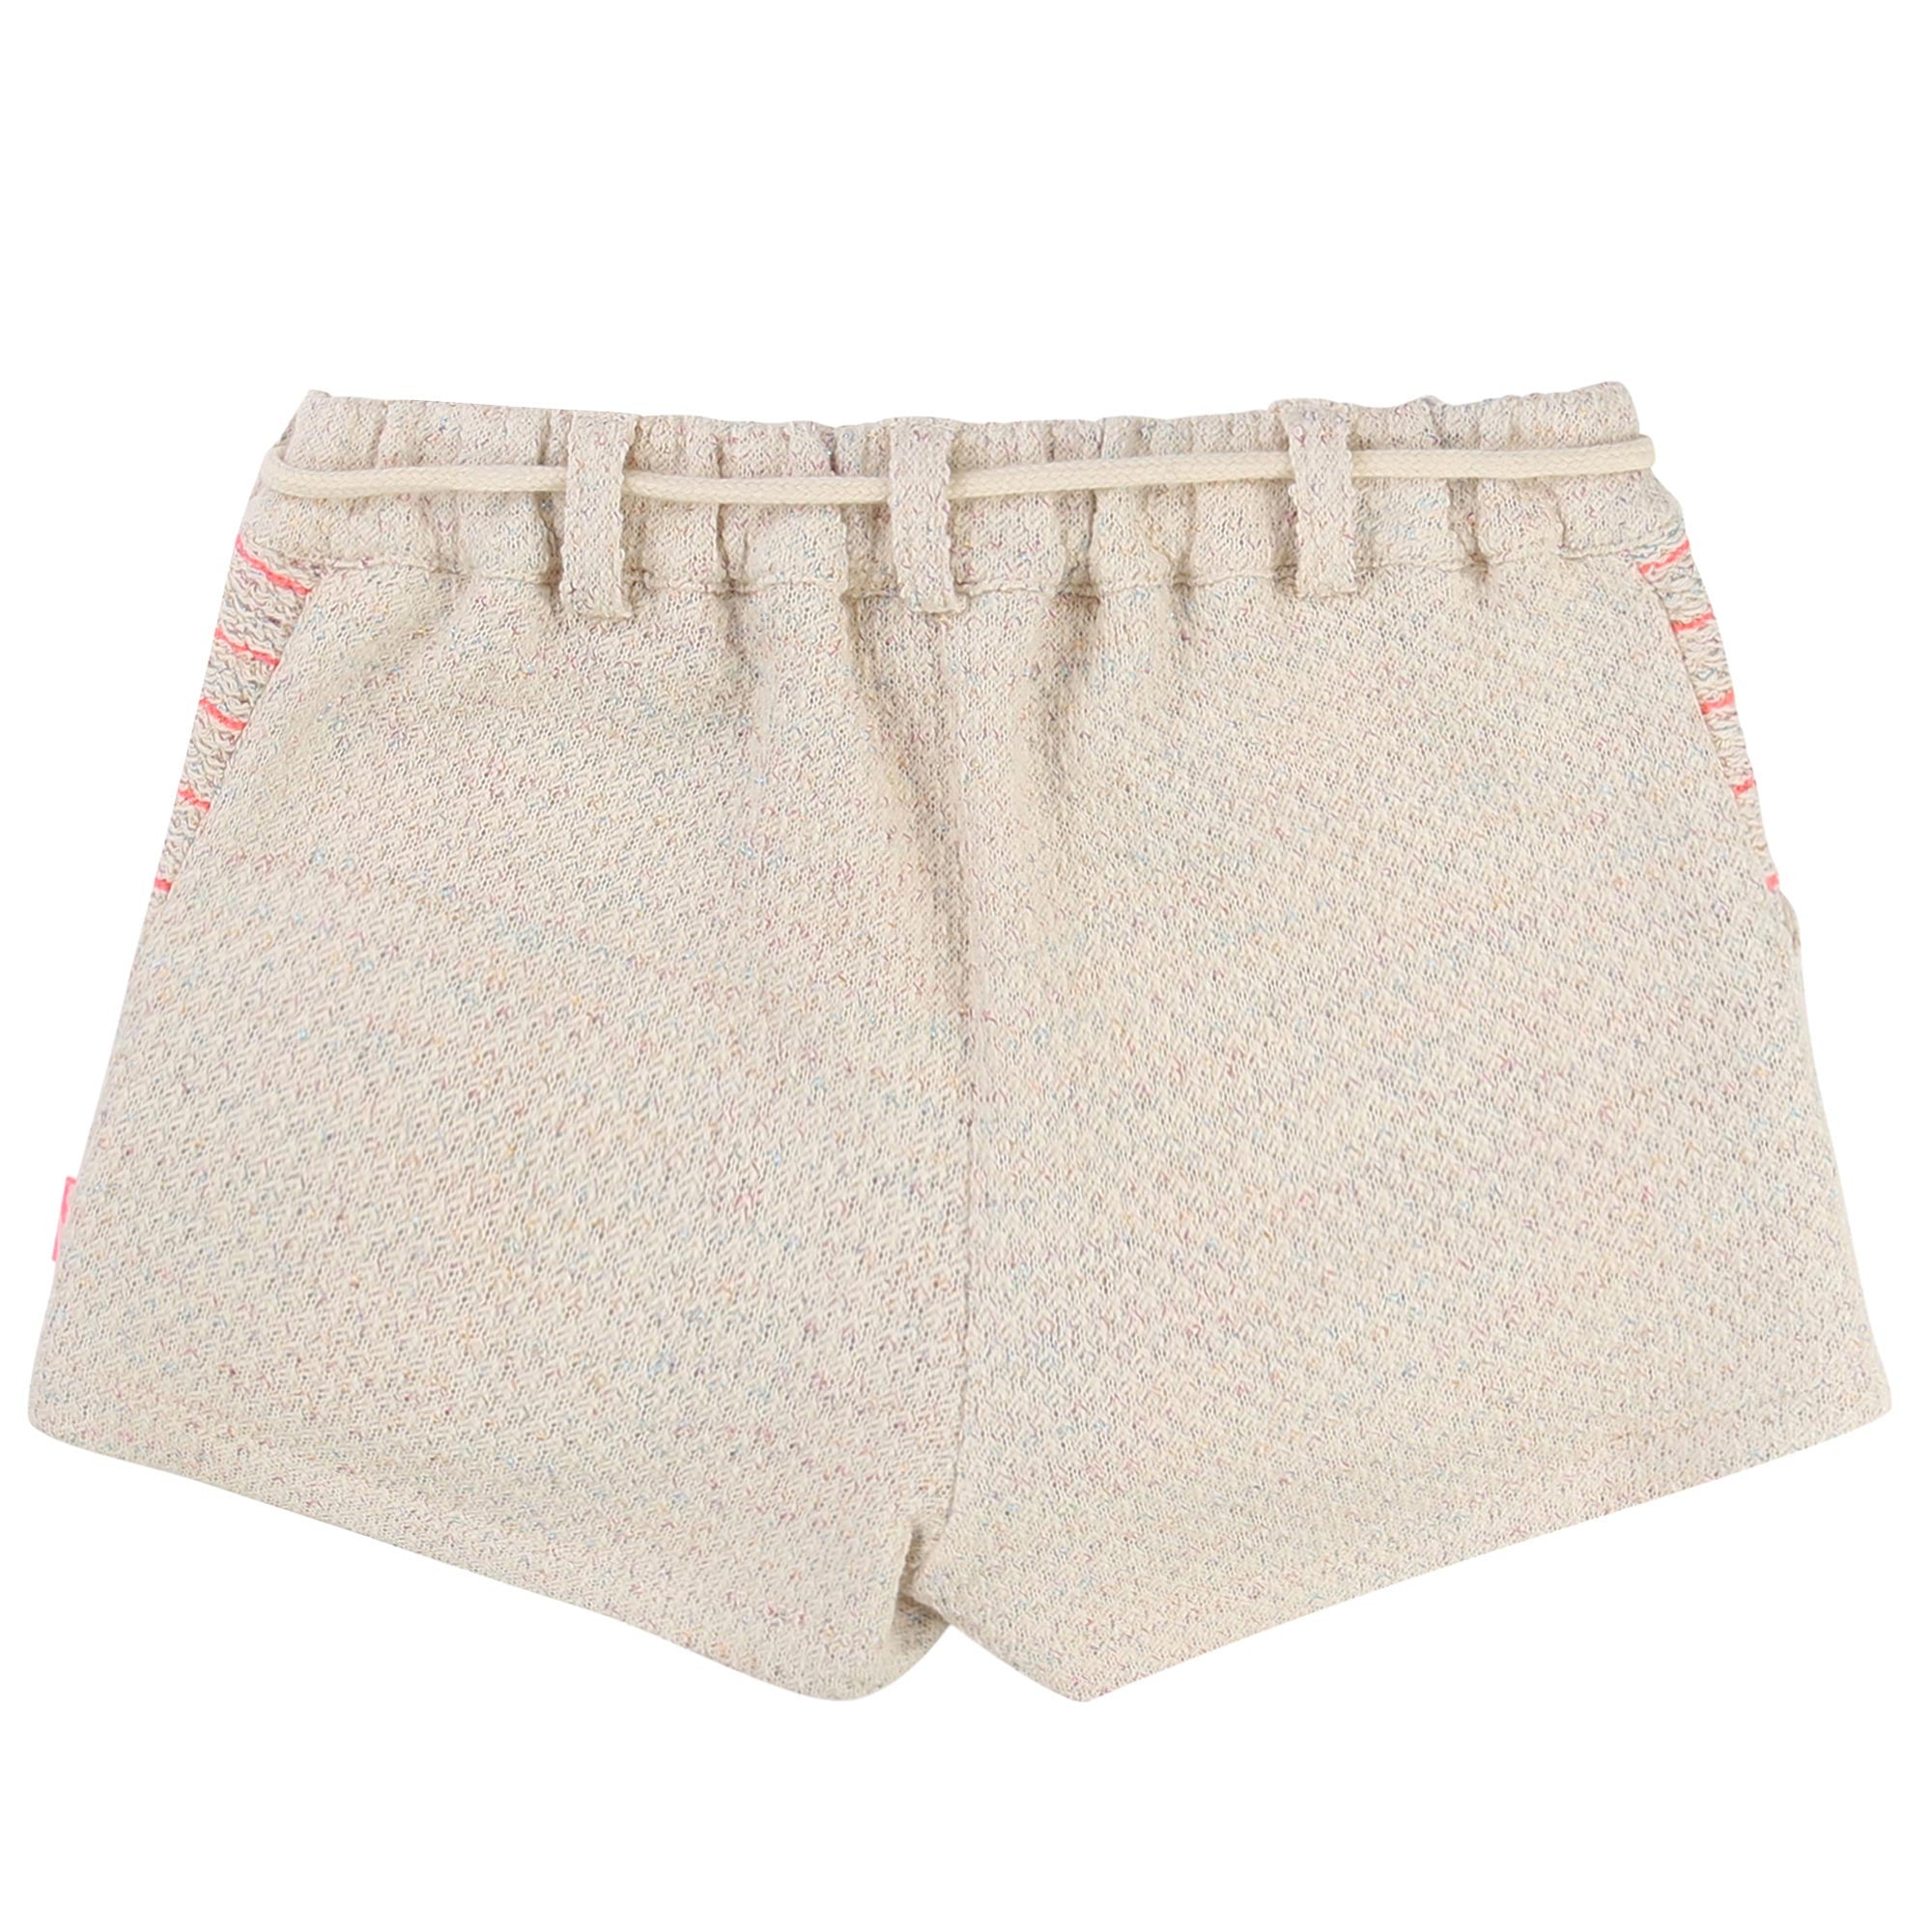 Girls Ivory Cotton Shorts